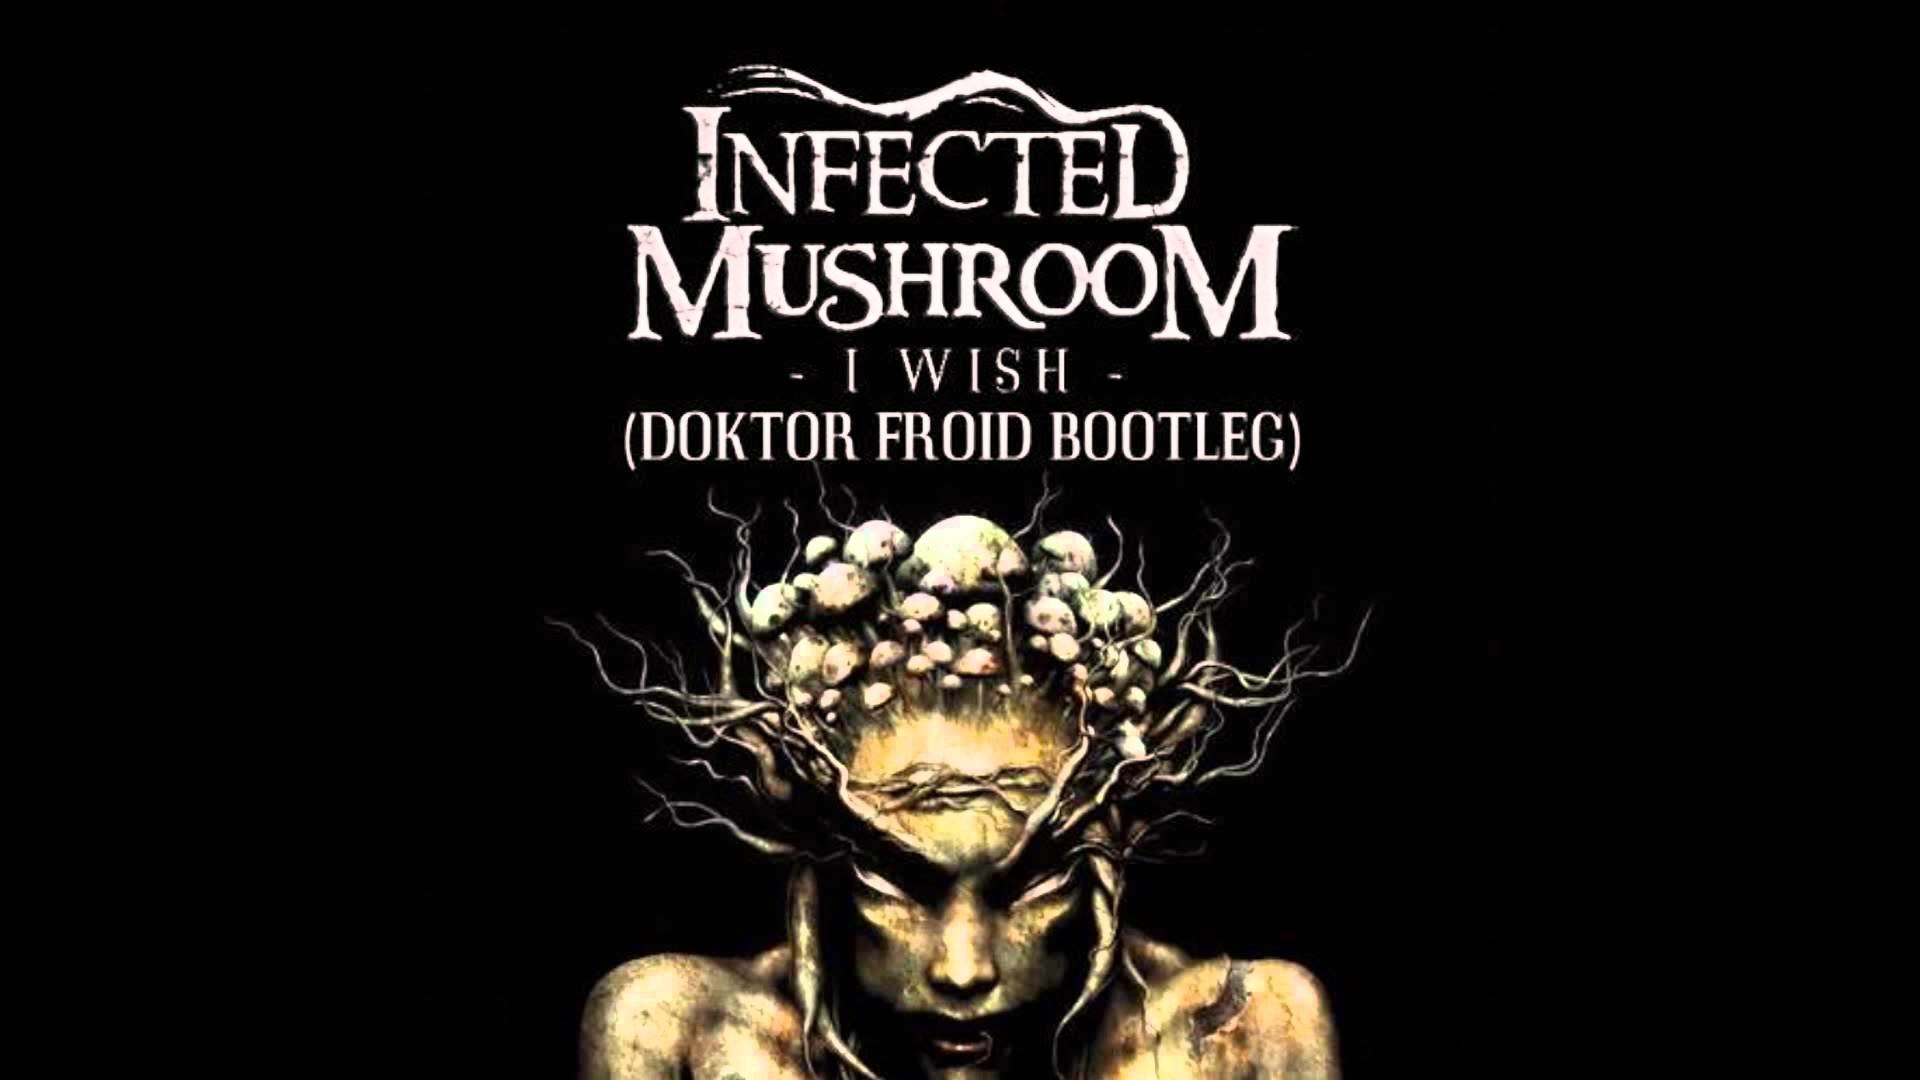 1920x1080 Infected Mushroom - I Wish (Doktor Froid Bootleg)